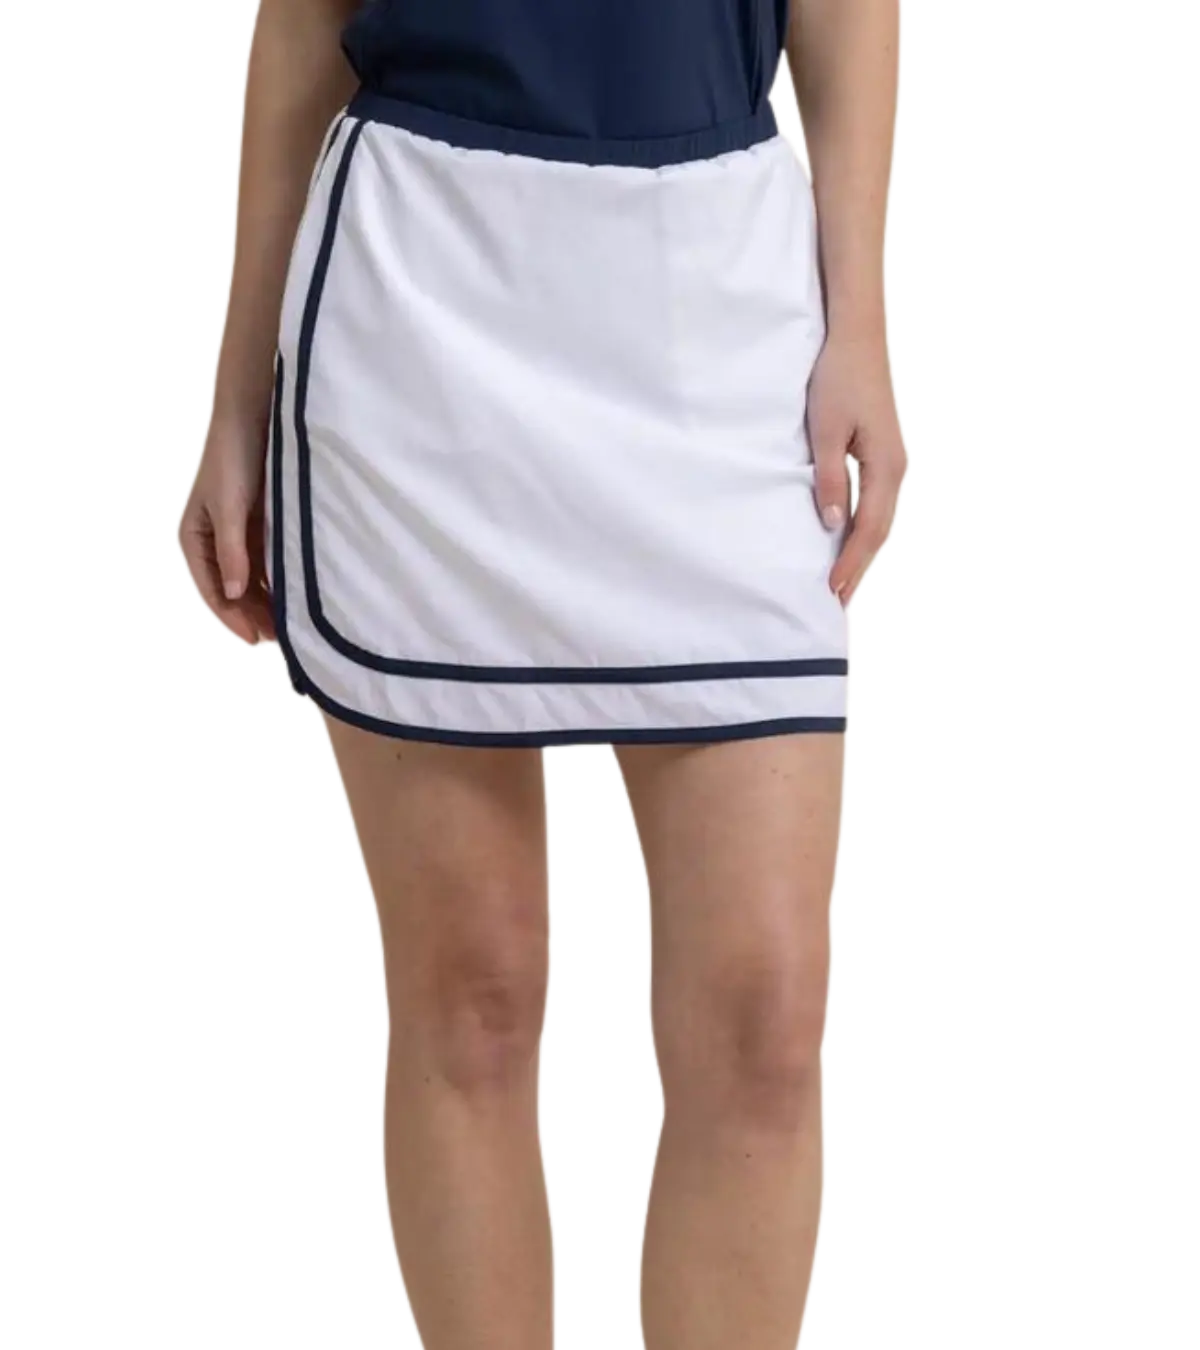 southern-tide-womens-elaina-golf-skirt-white.webp